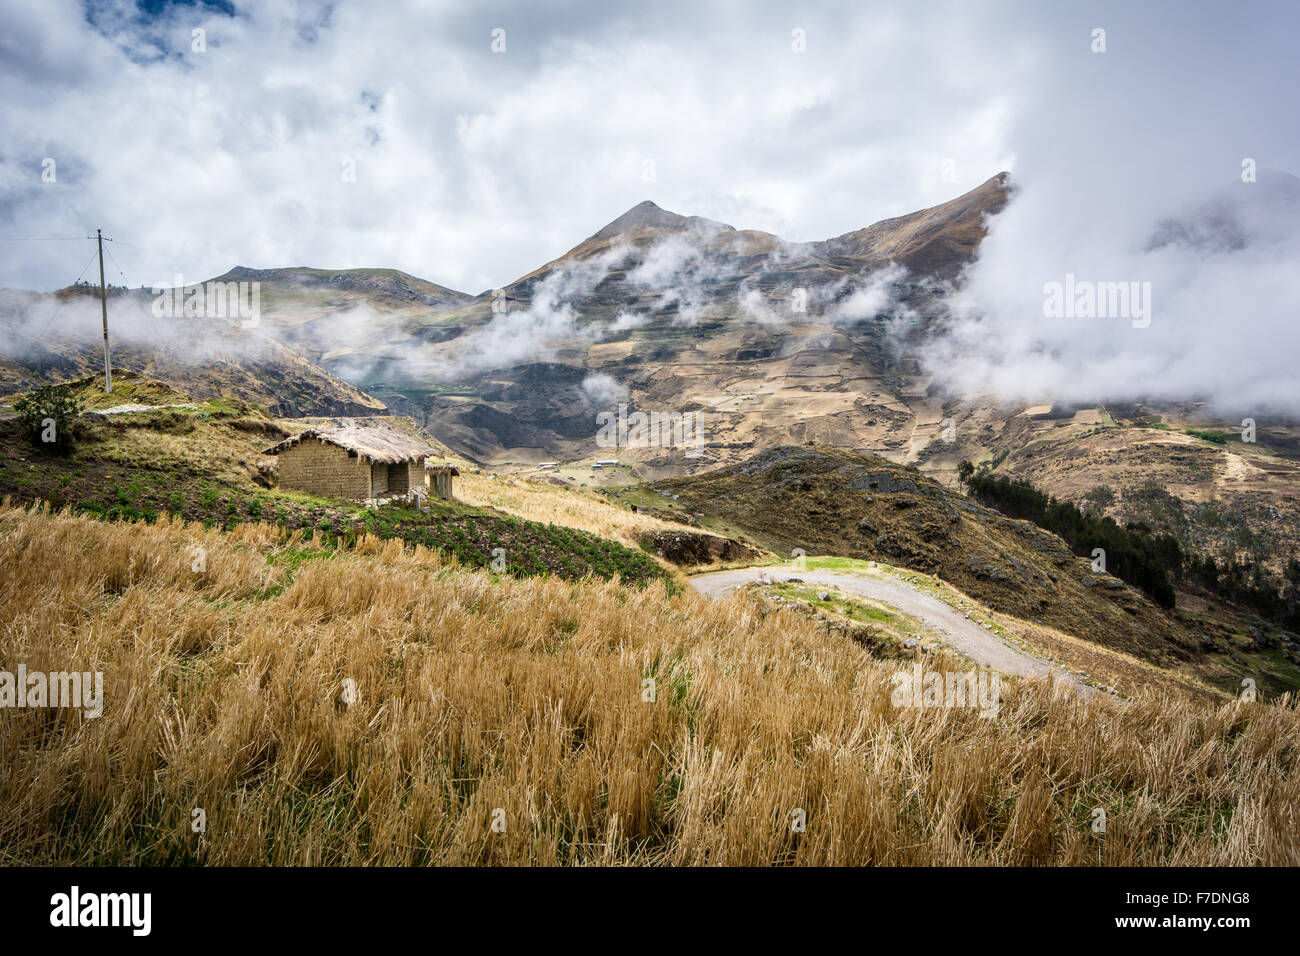 Adobe tradizionale casa sulla collina nuvoloso nei pressi di Cajabamba nella regione montagnosa di Cajamarca Perù Foto Stock